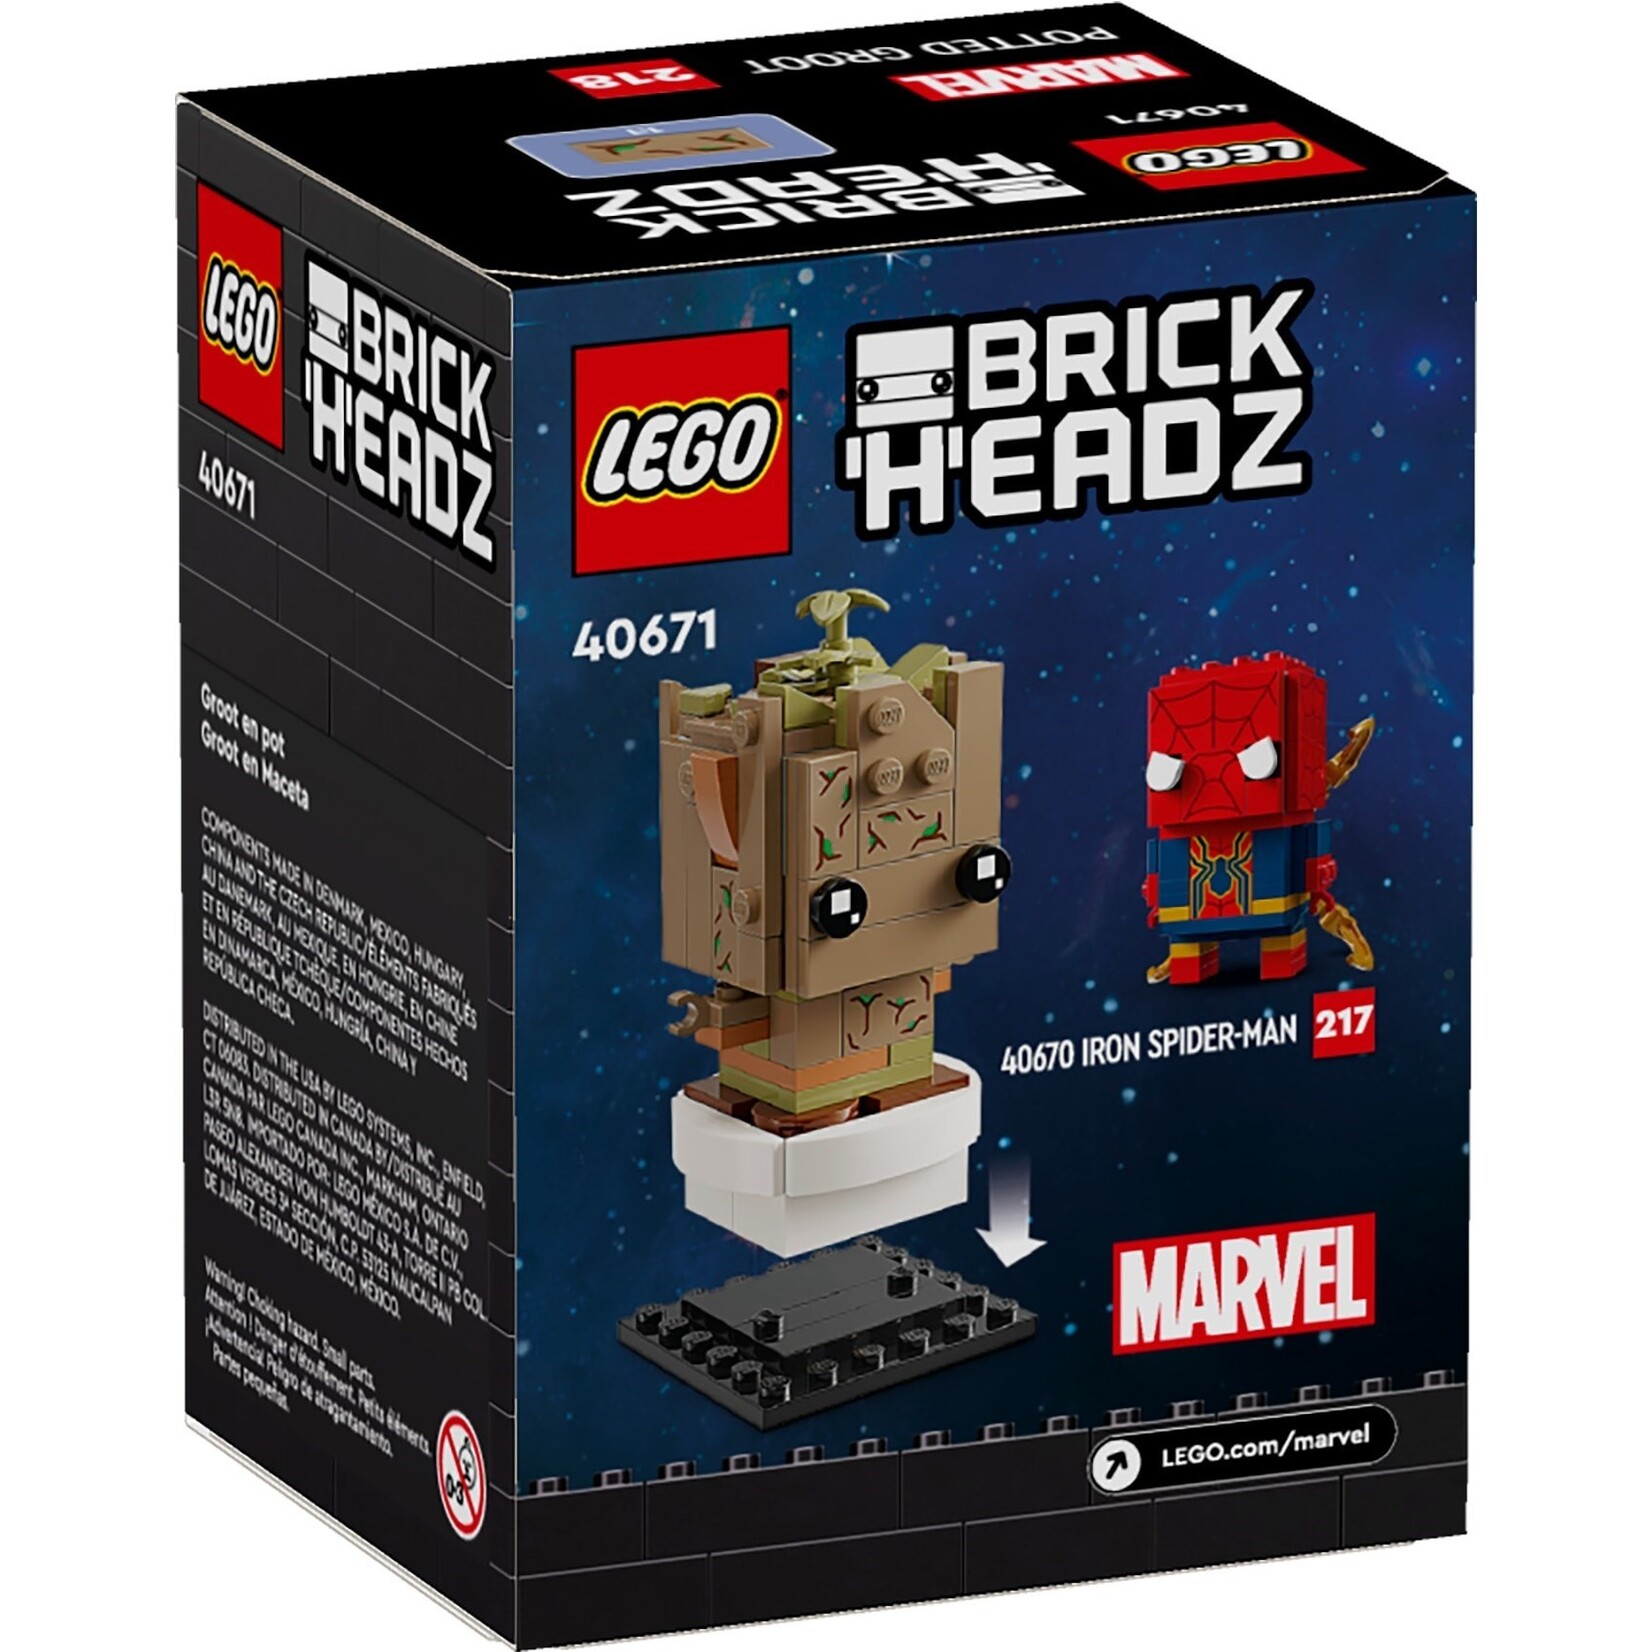 LEGO Groot in Pot - 40671